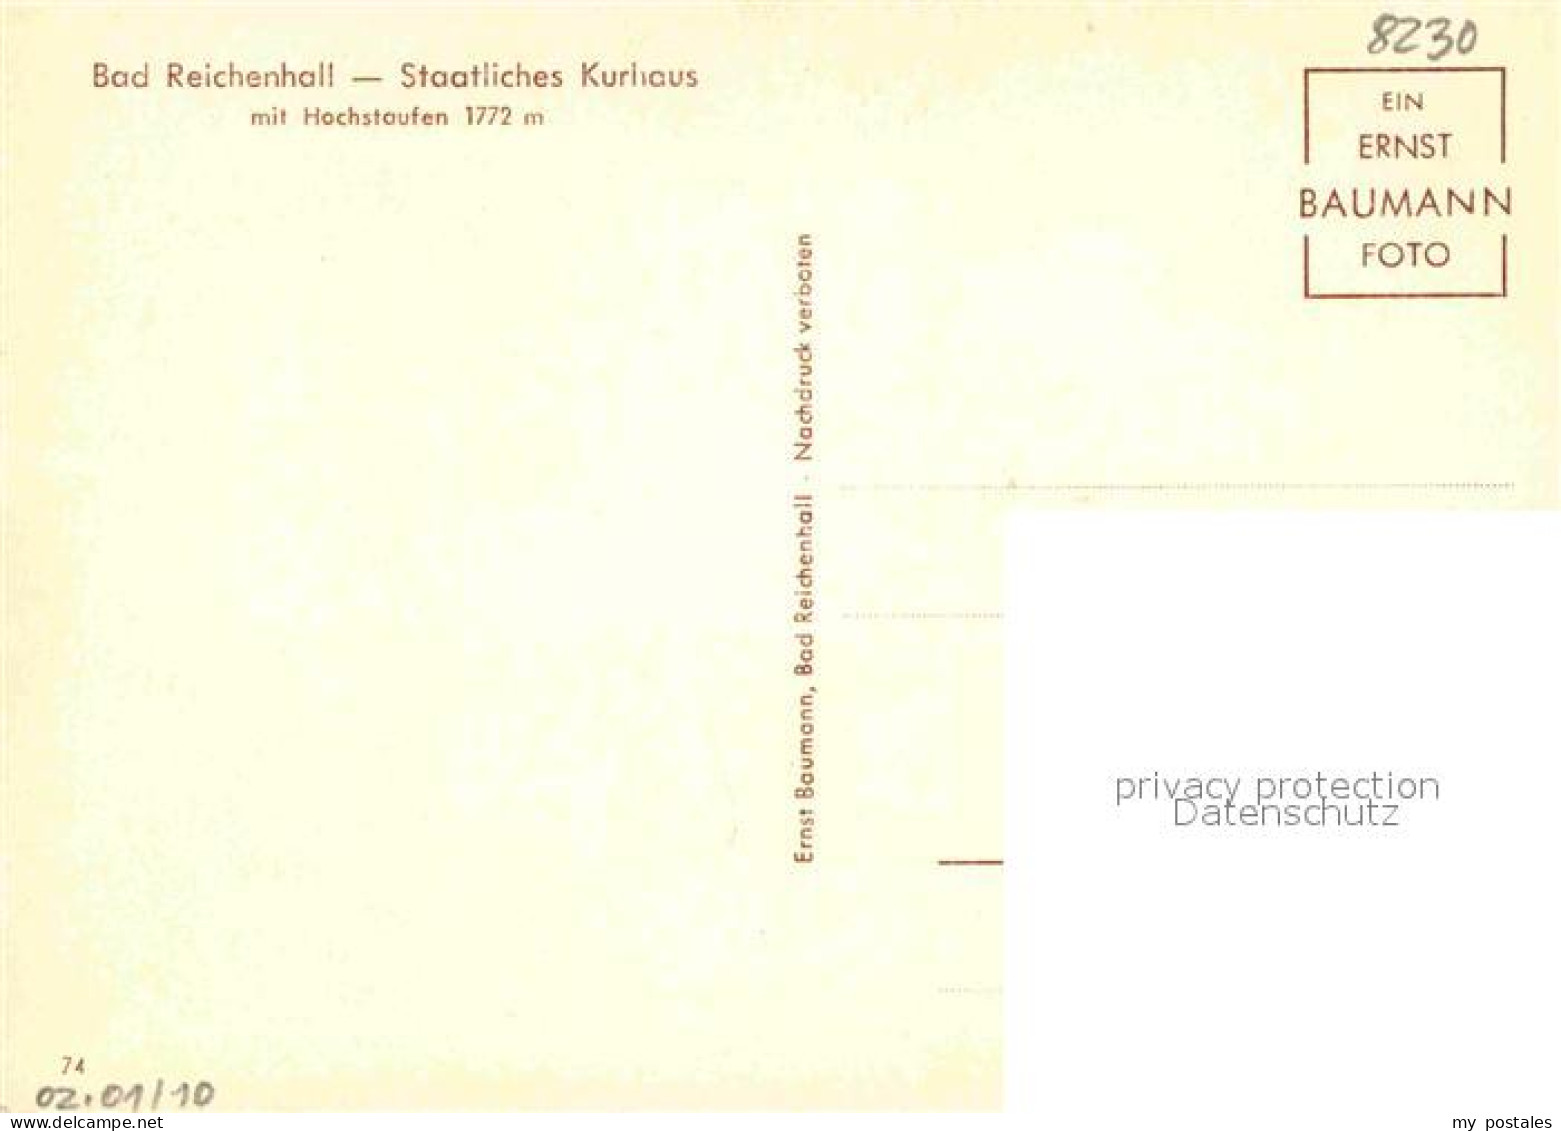 72886847 Bad Reichenhall Staatl Kurhaus mit Hochstaufen Bad Reichenhall